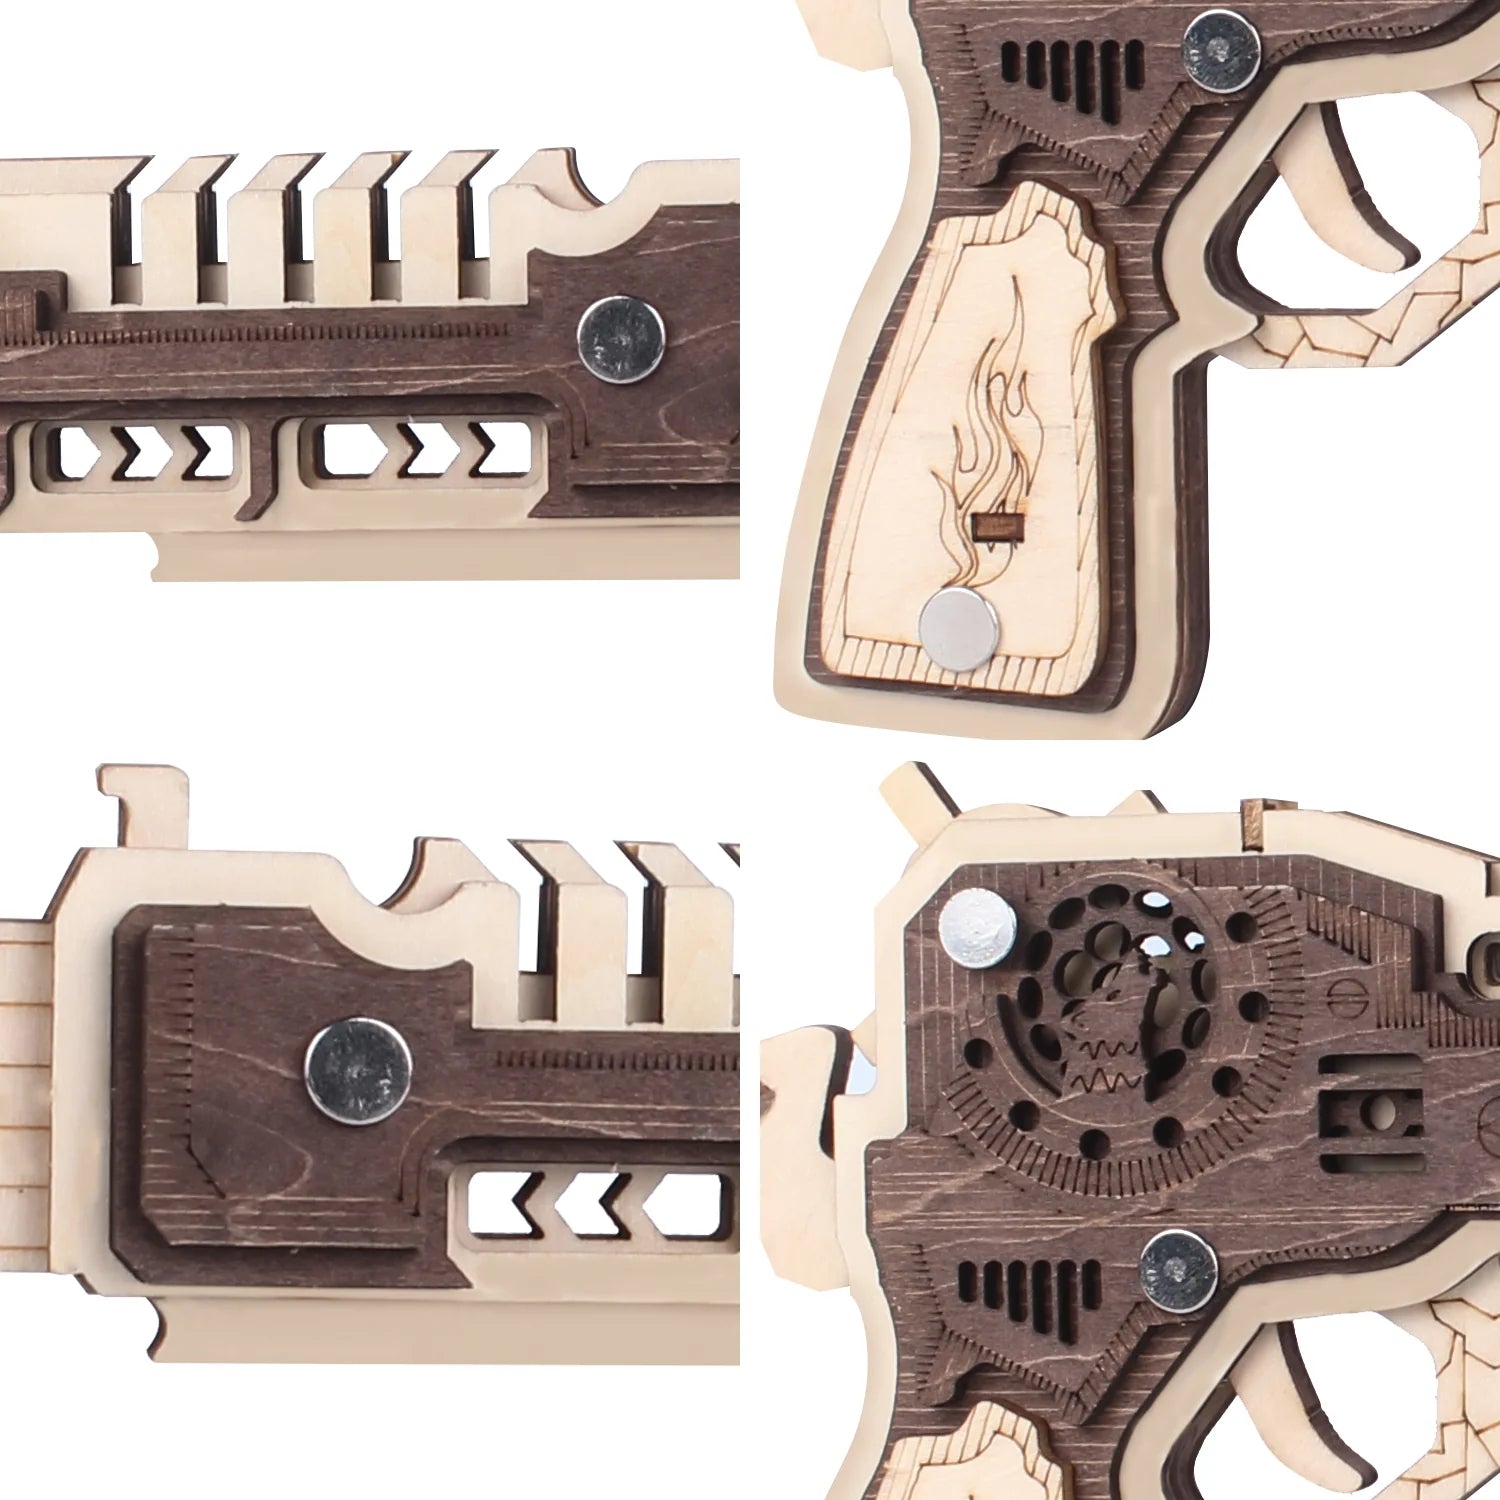 Wooden Toy Gun Puzzle Desert Eagle Band Gun